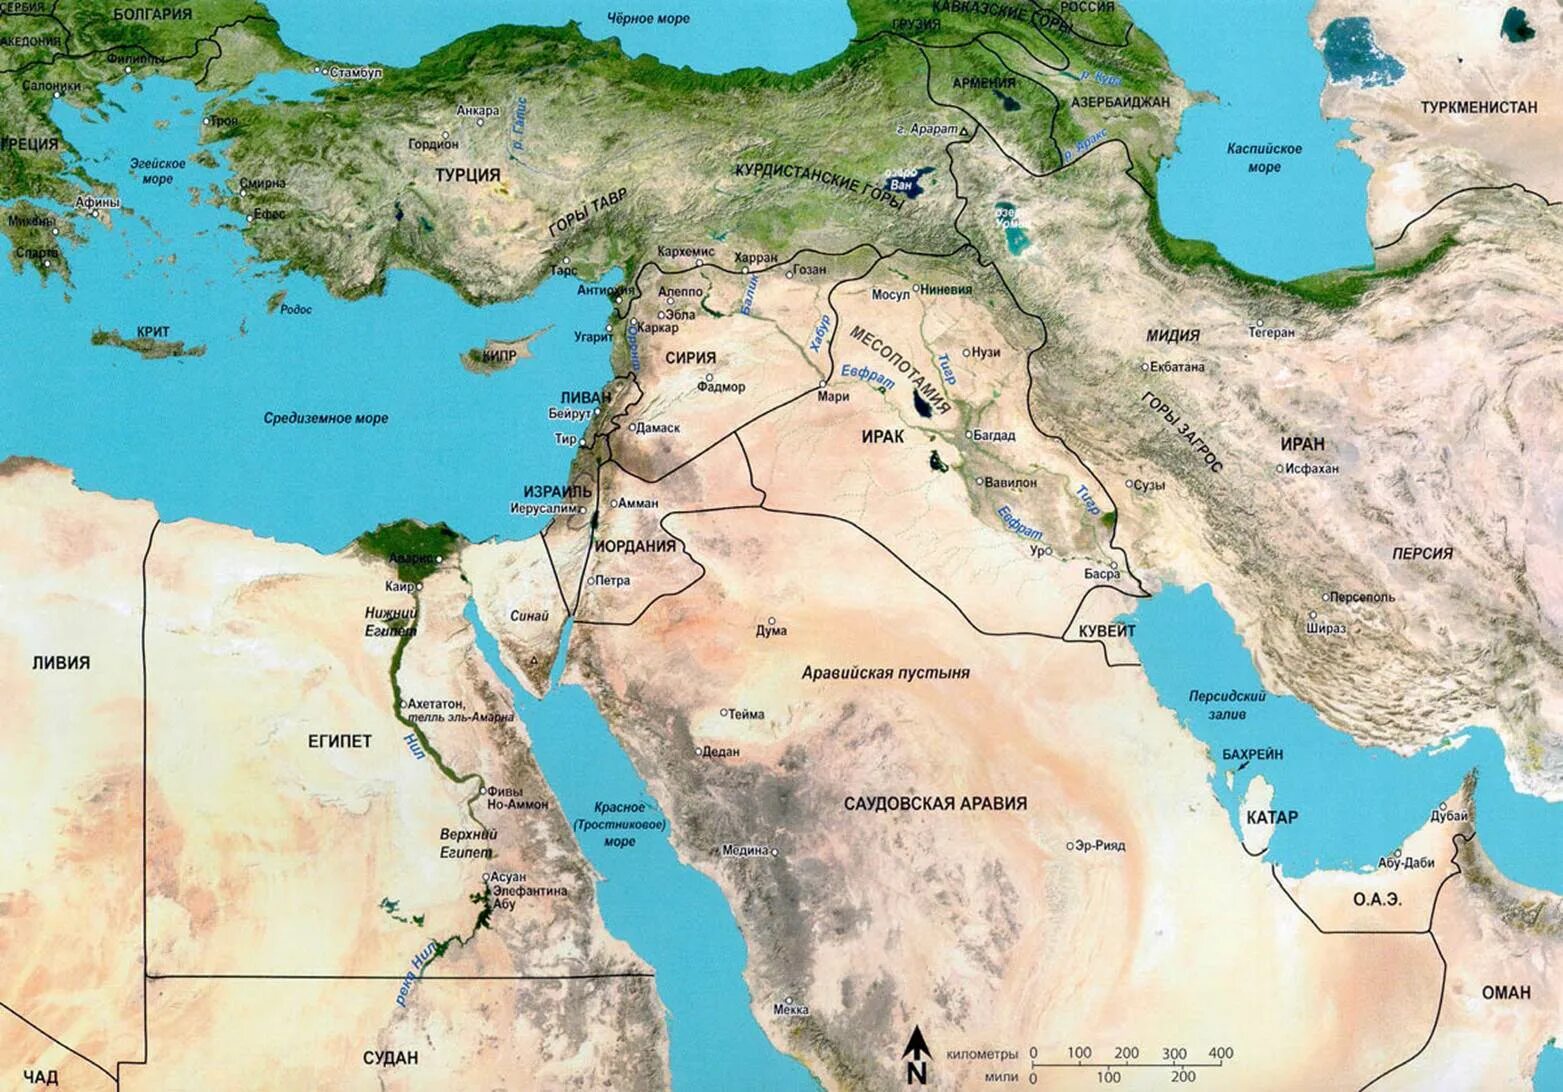 Где находится есть. Где находится Вавилон на карте. Доевний Авилон на карте. Древний Вавилон на карте современного мира. Город Вавилон на карте древнего мира.